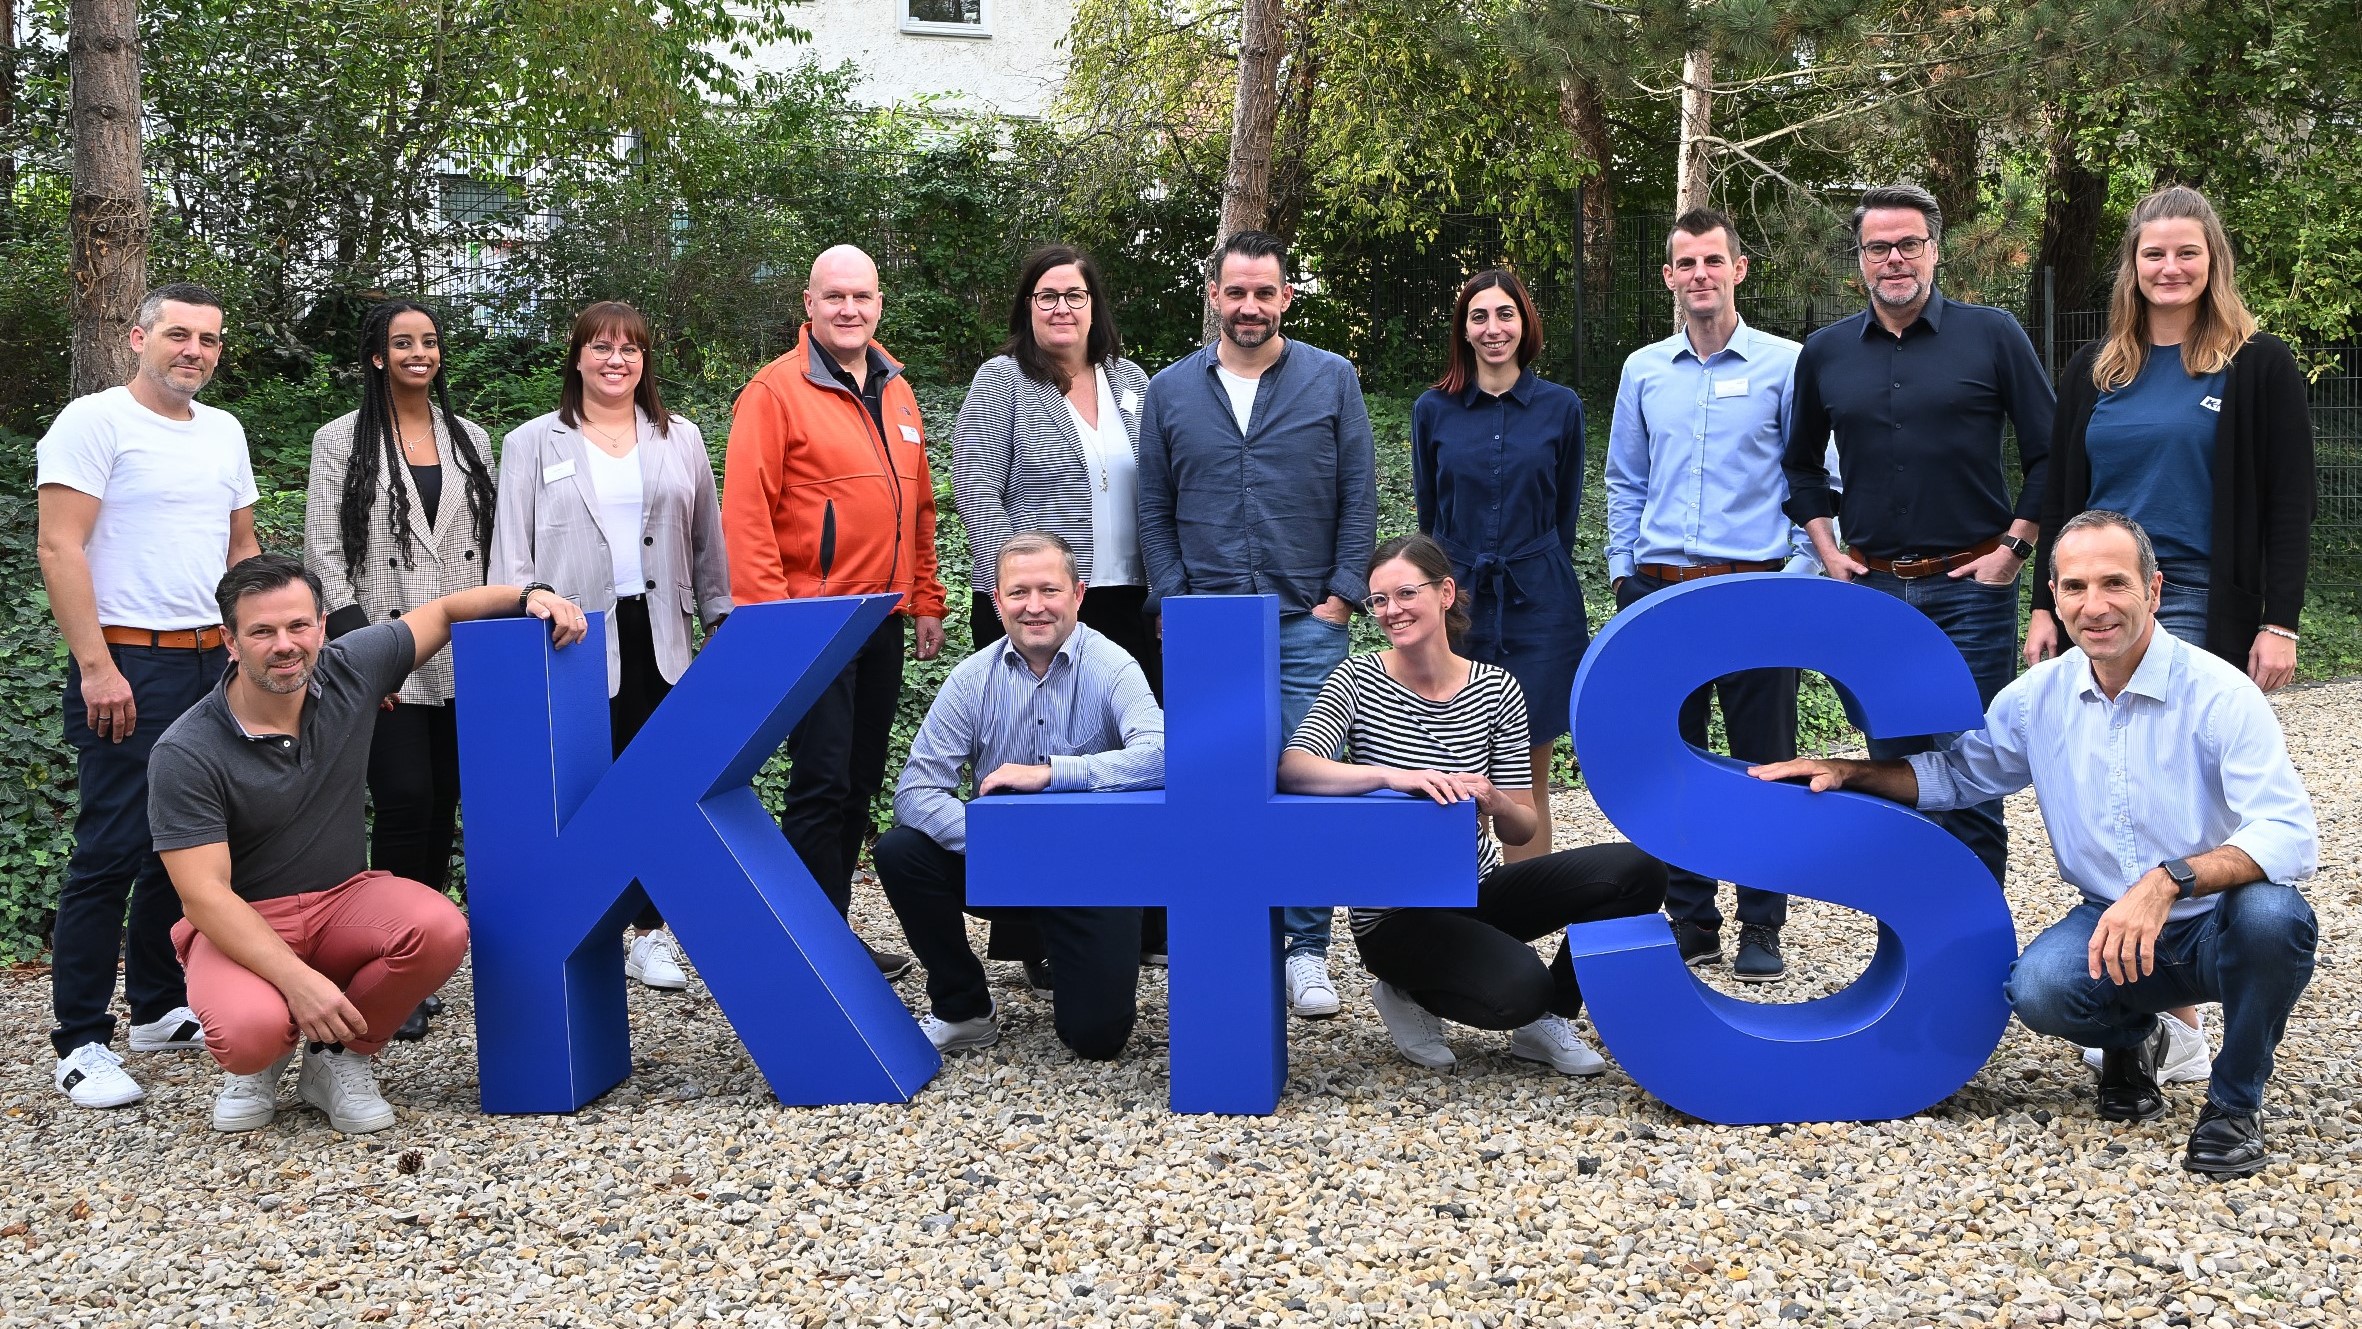 Gruppenfoto von 14 Mitarbeiter:innen der Kpluss AG hinter großen blauen kpluss Buchstaben 